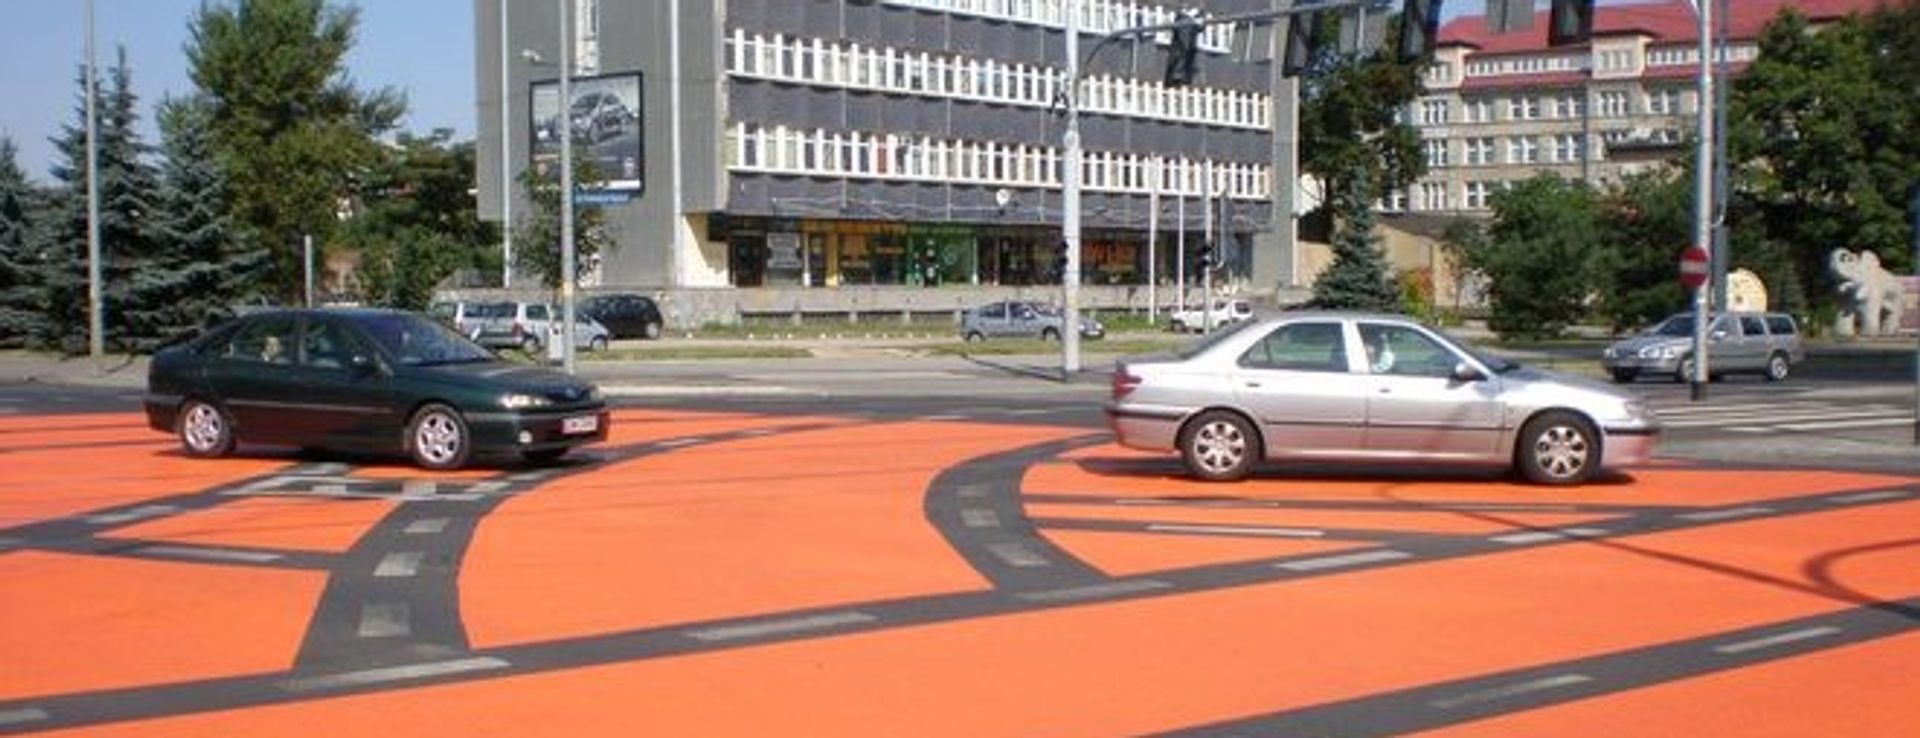  Radny chce monitoringu i czerwonych pasów na głównych skrzyżowaniach w mieście